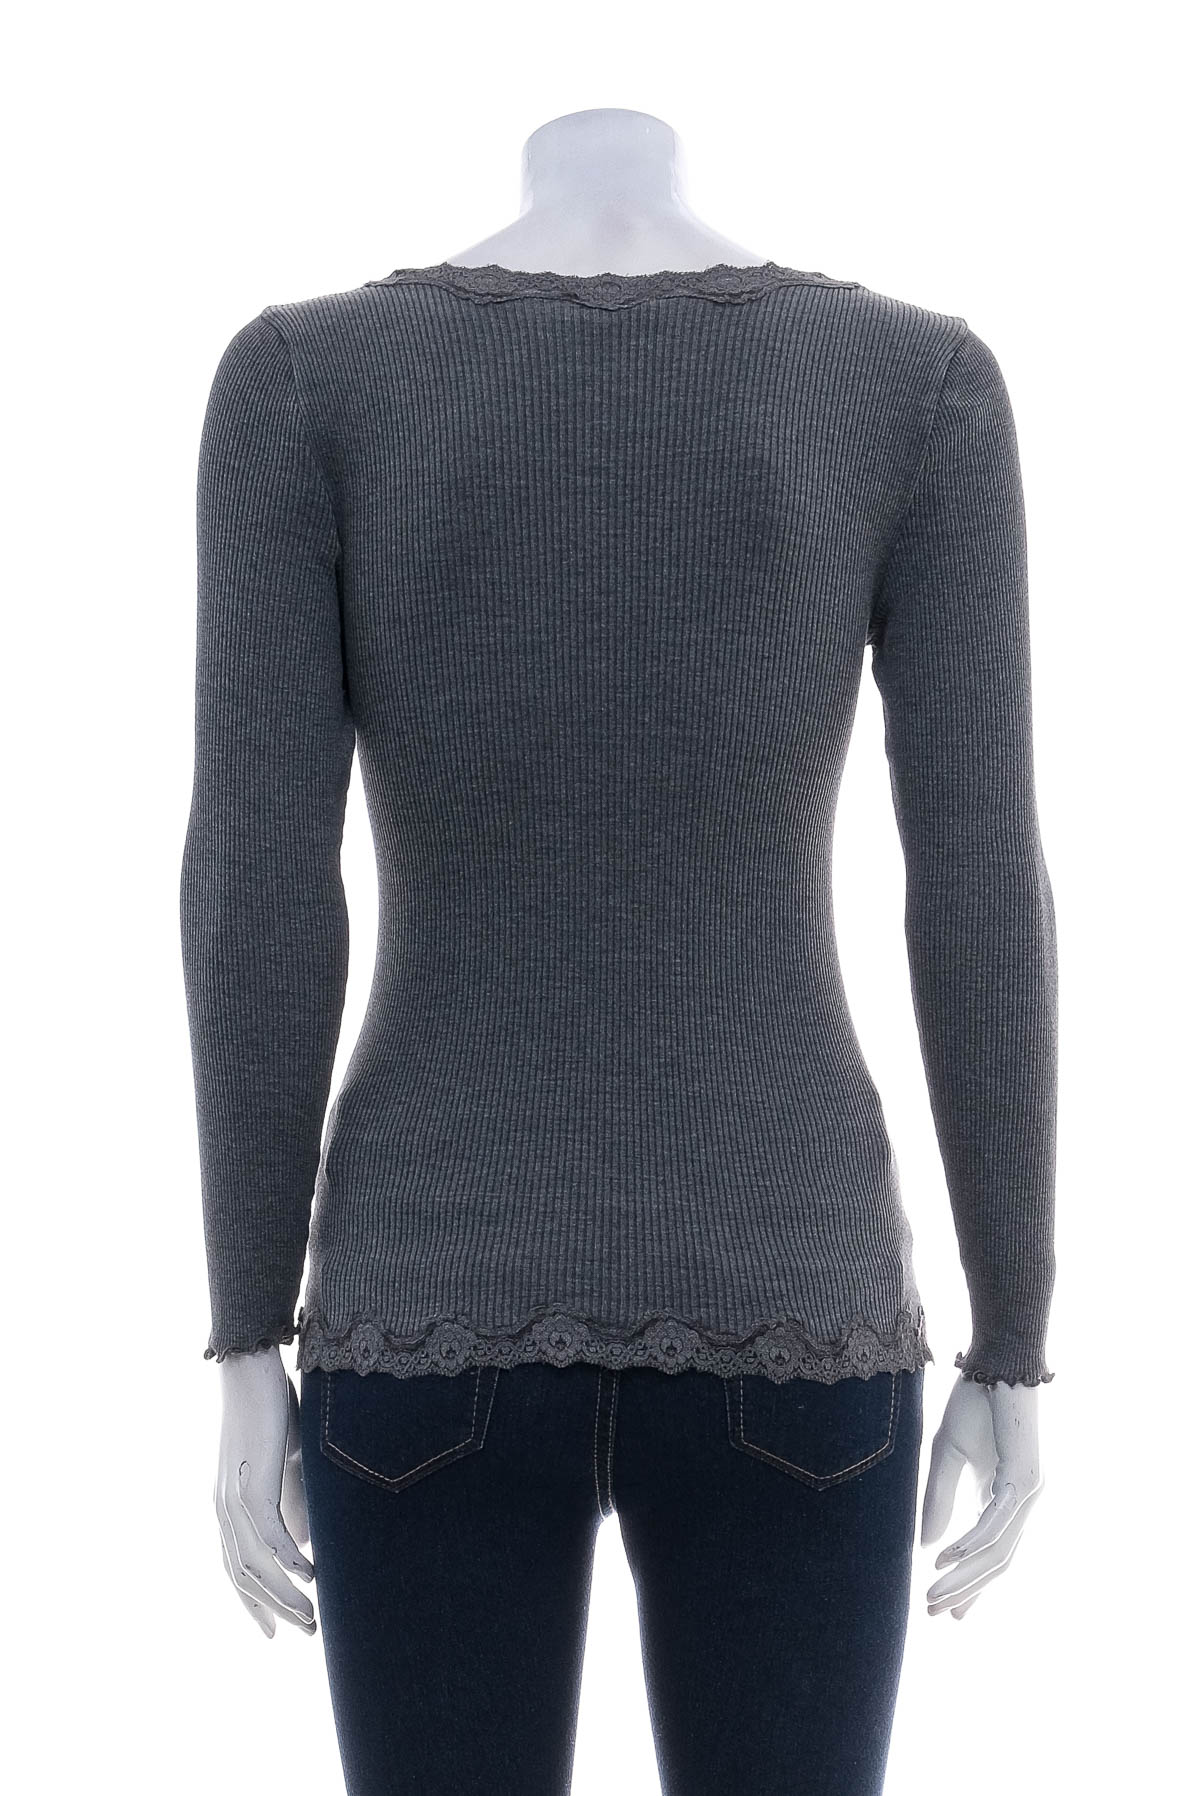 Women's sweater - Rosemunde - 1